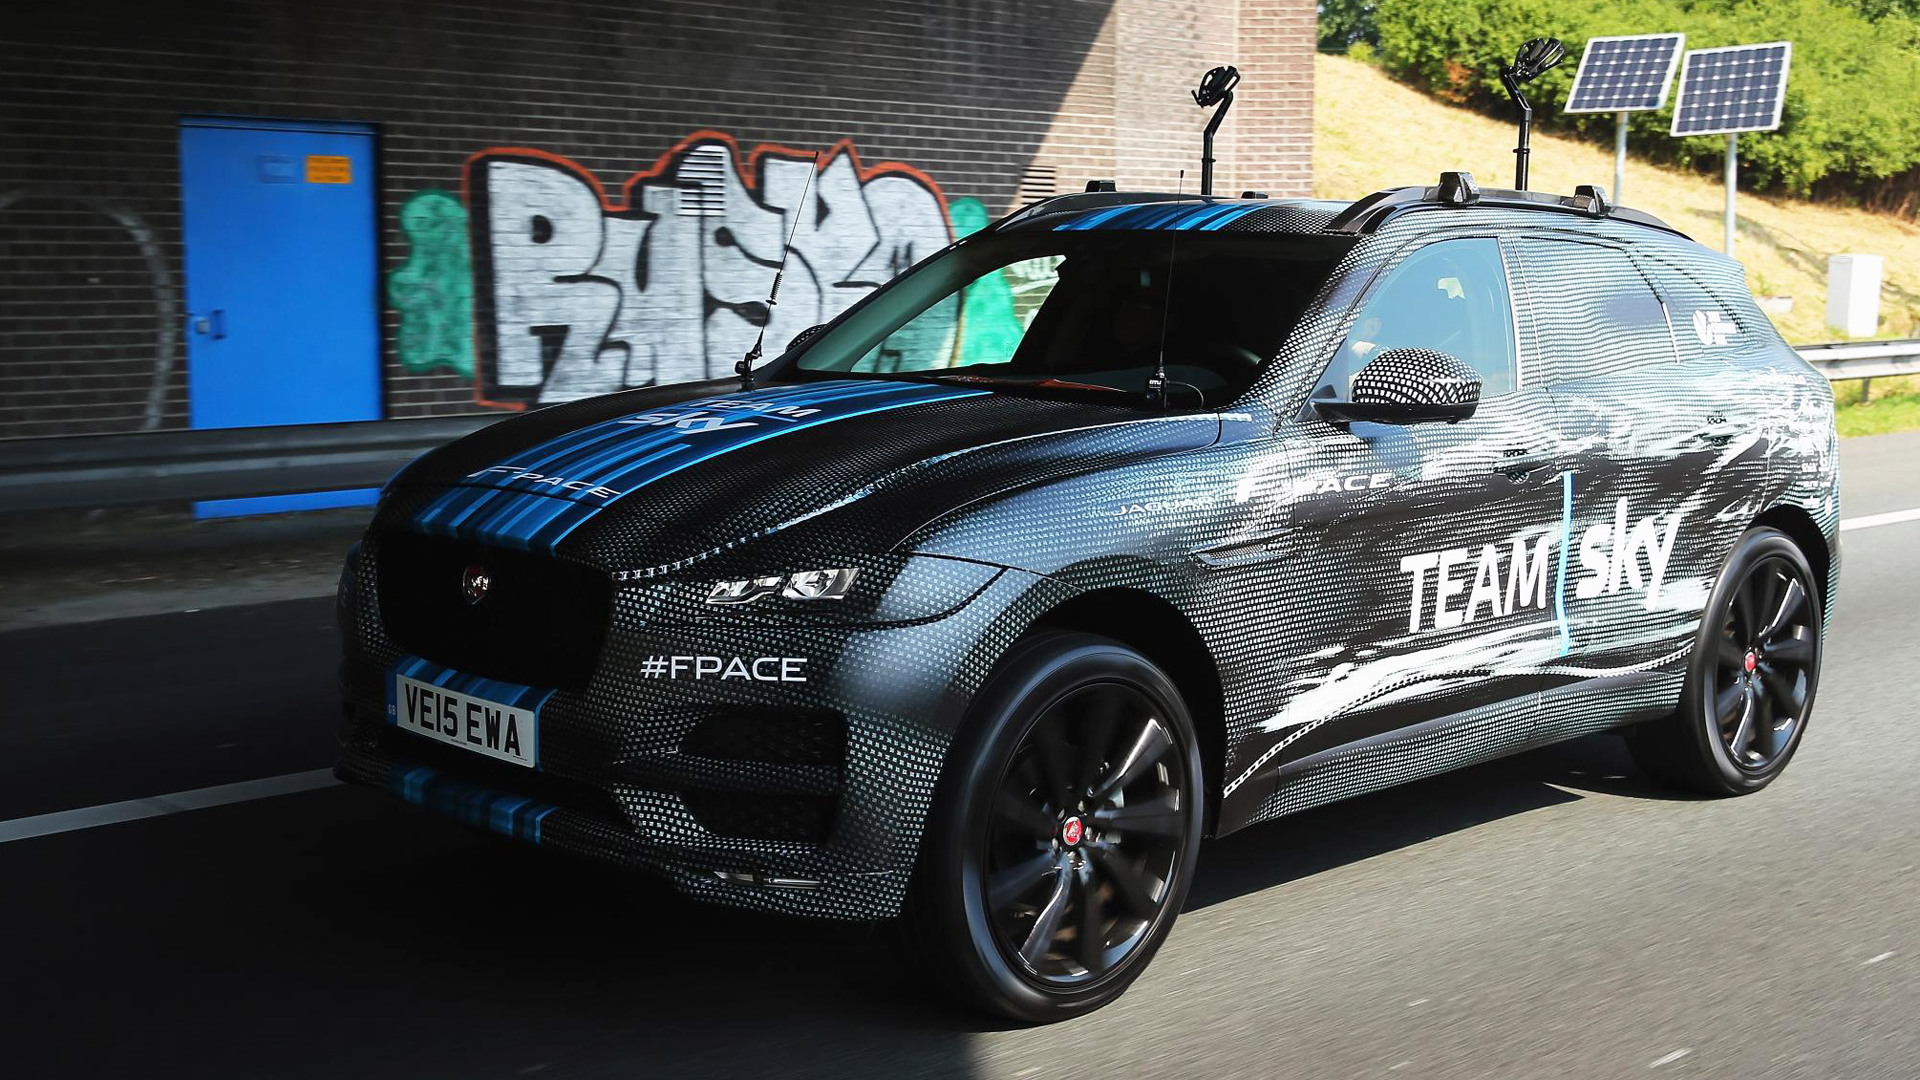 2017 Jaguar F-Pace serves as 2015 Tour de France support vehicle